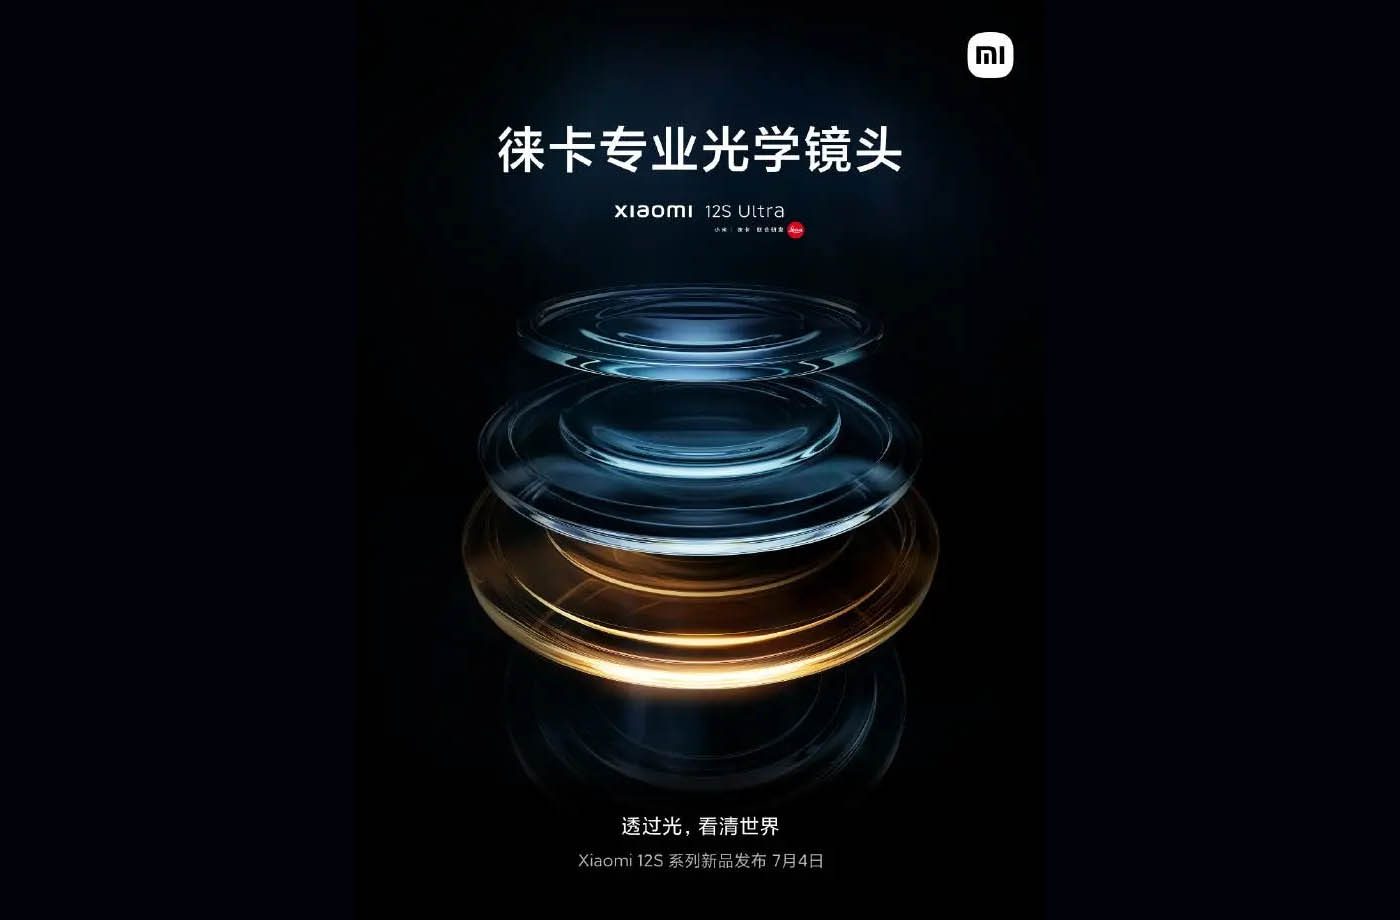 Bloc optique Xiaomi/Leica